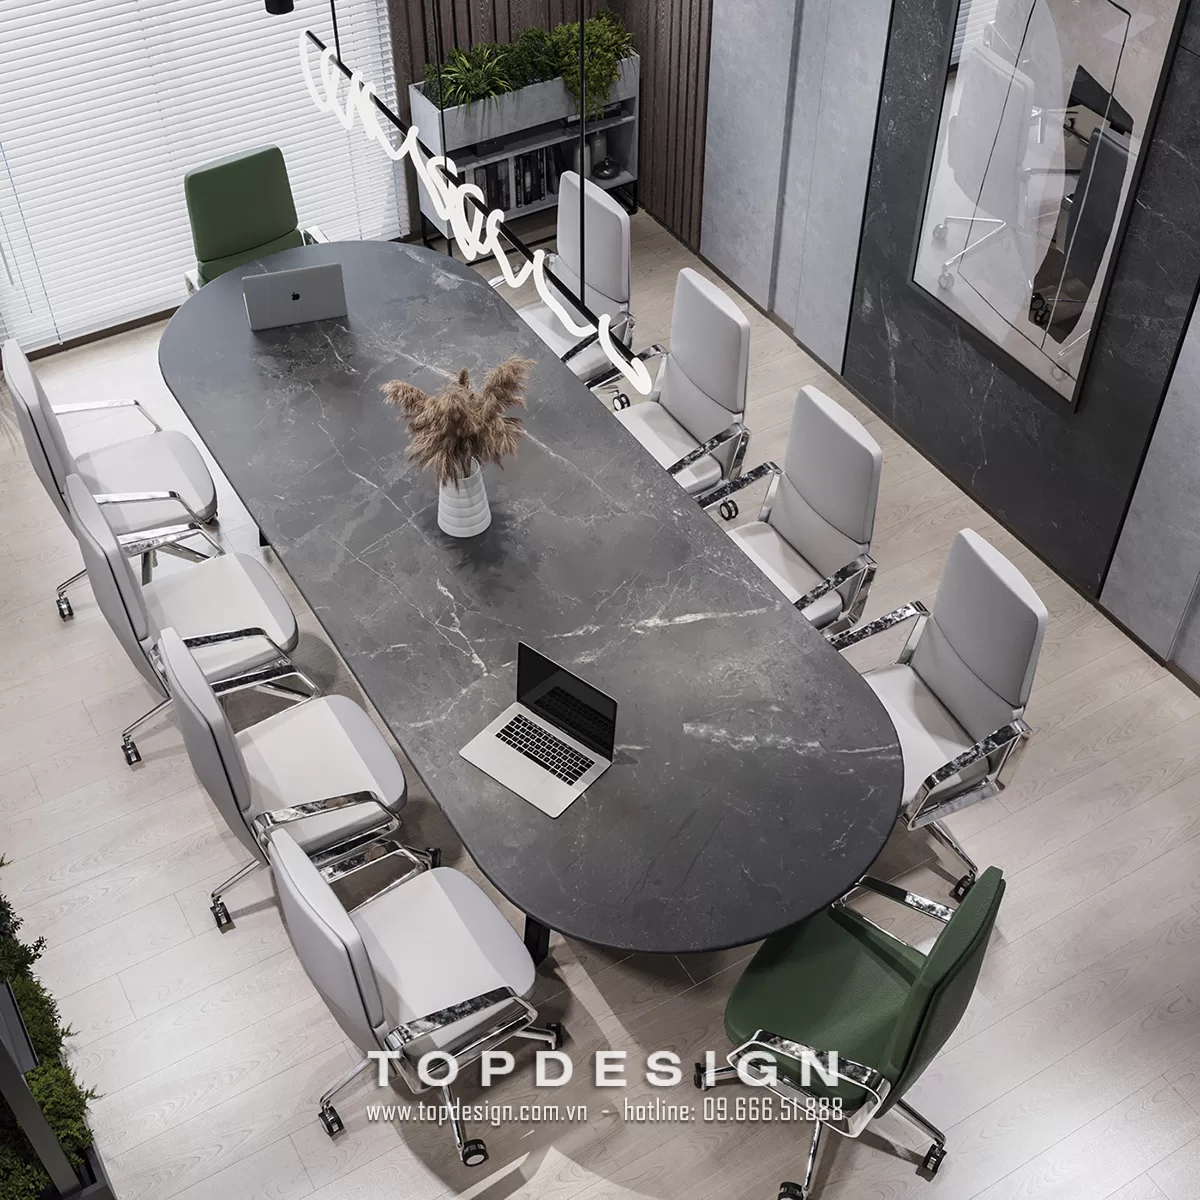 Kinh nghiệm thiết kế nội thất văn phòng - TOPDESIGN - 10